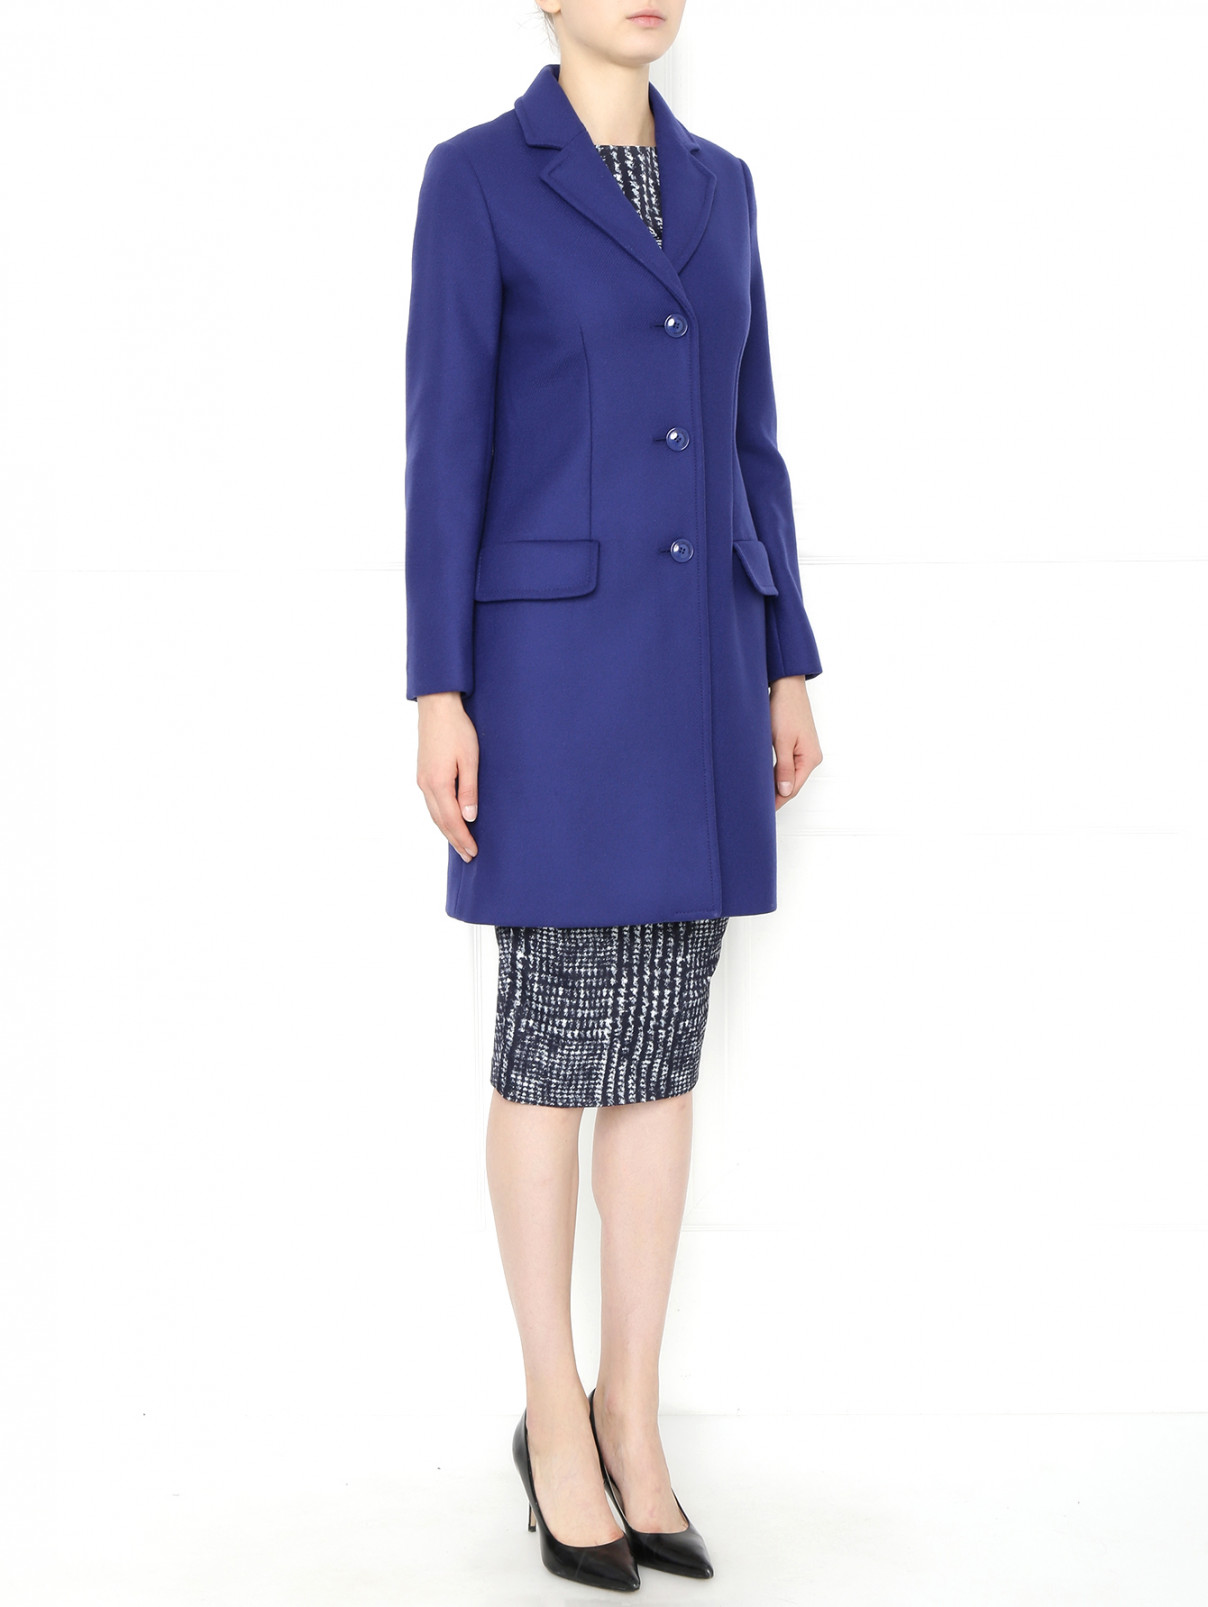 Пальто из шерсти и нейлона с отложным воротником Moschino Cheap&Chic  –  Модель Общий вид  – Цвет:  Синий